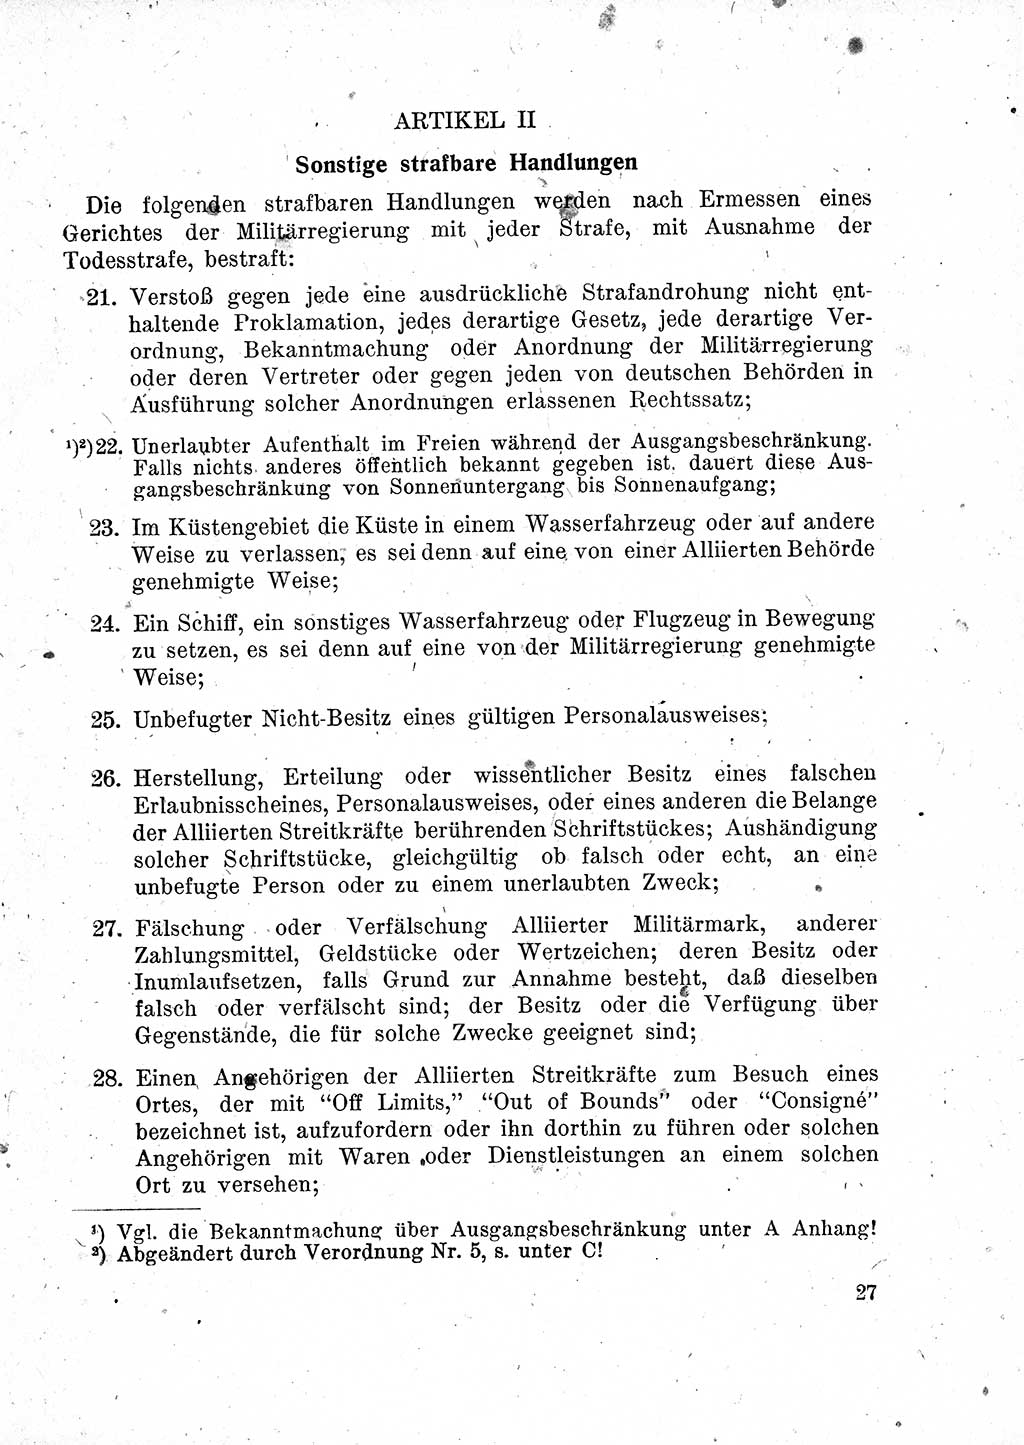 Das Recht der Besatzungsmacht (Deutschland), Proklamationen, Deklerationen, Verordnungen, Gesetze und Bekanntmachungen 1947, Seite 27 (R. Bes. Dtl. 1947, S. 27)